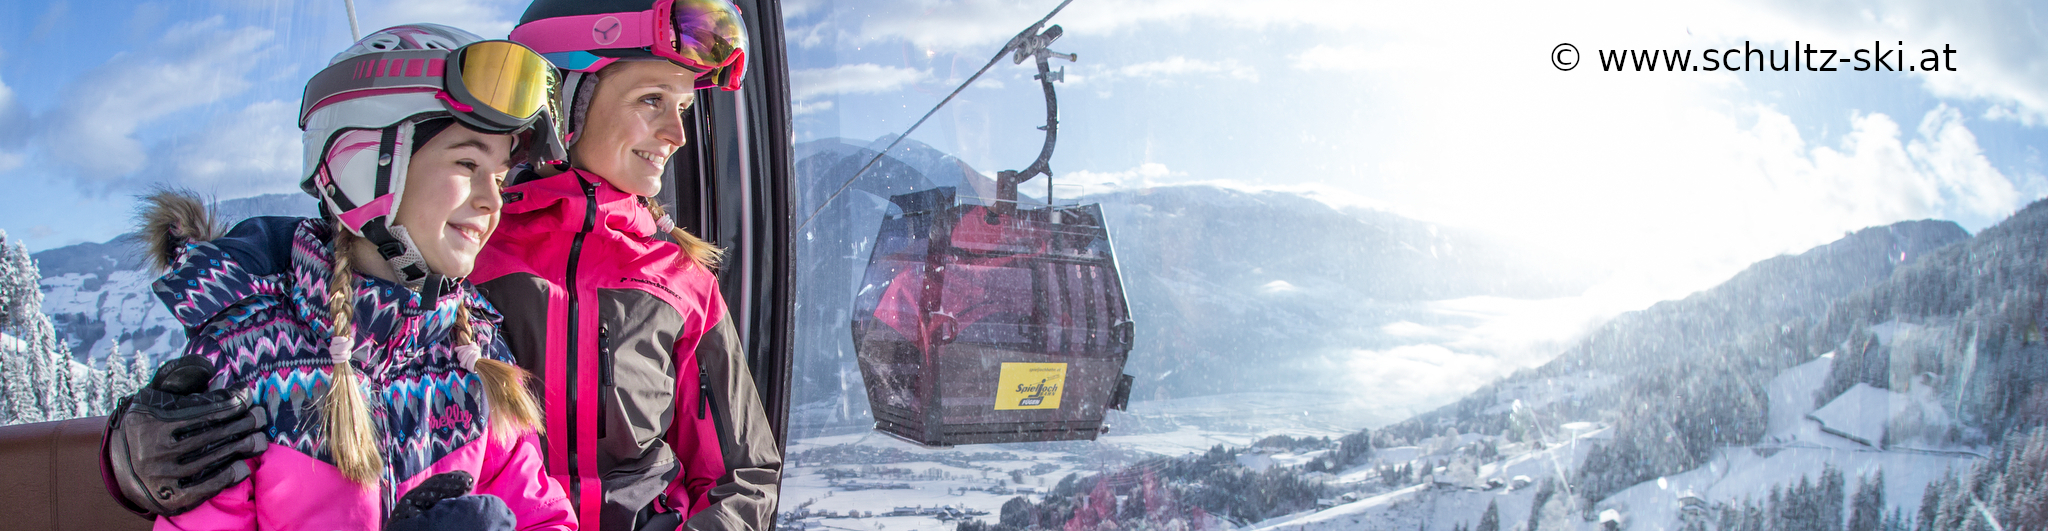 ZILLERTAL – verlängertes Skiwochenende mit 3 Skitagen – in den Weihnachtsferien – ab Mittwoch nachmittag 